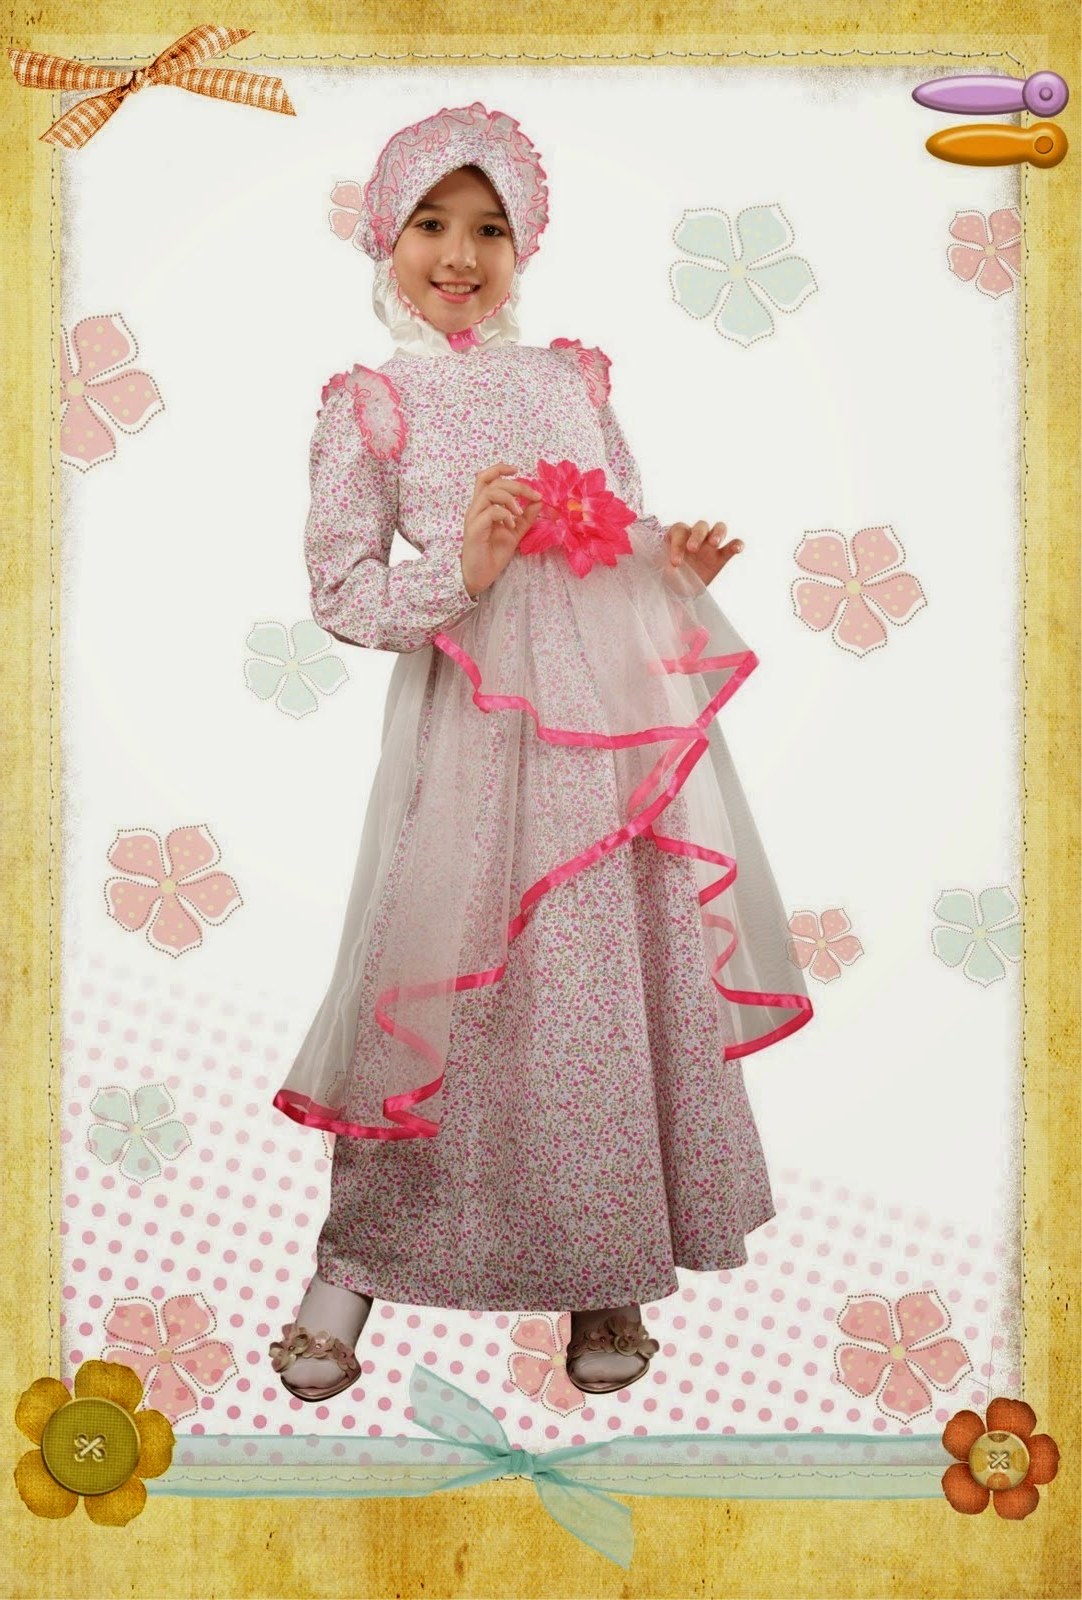 Design Model Baju Lebaran Anak Perempuan Etdg 20 Contoh Model Baju Muslim Anak Perempuan Terbaru